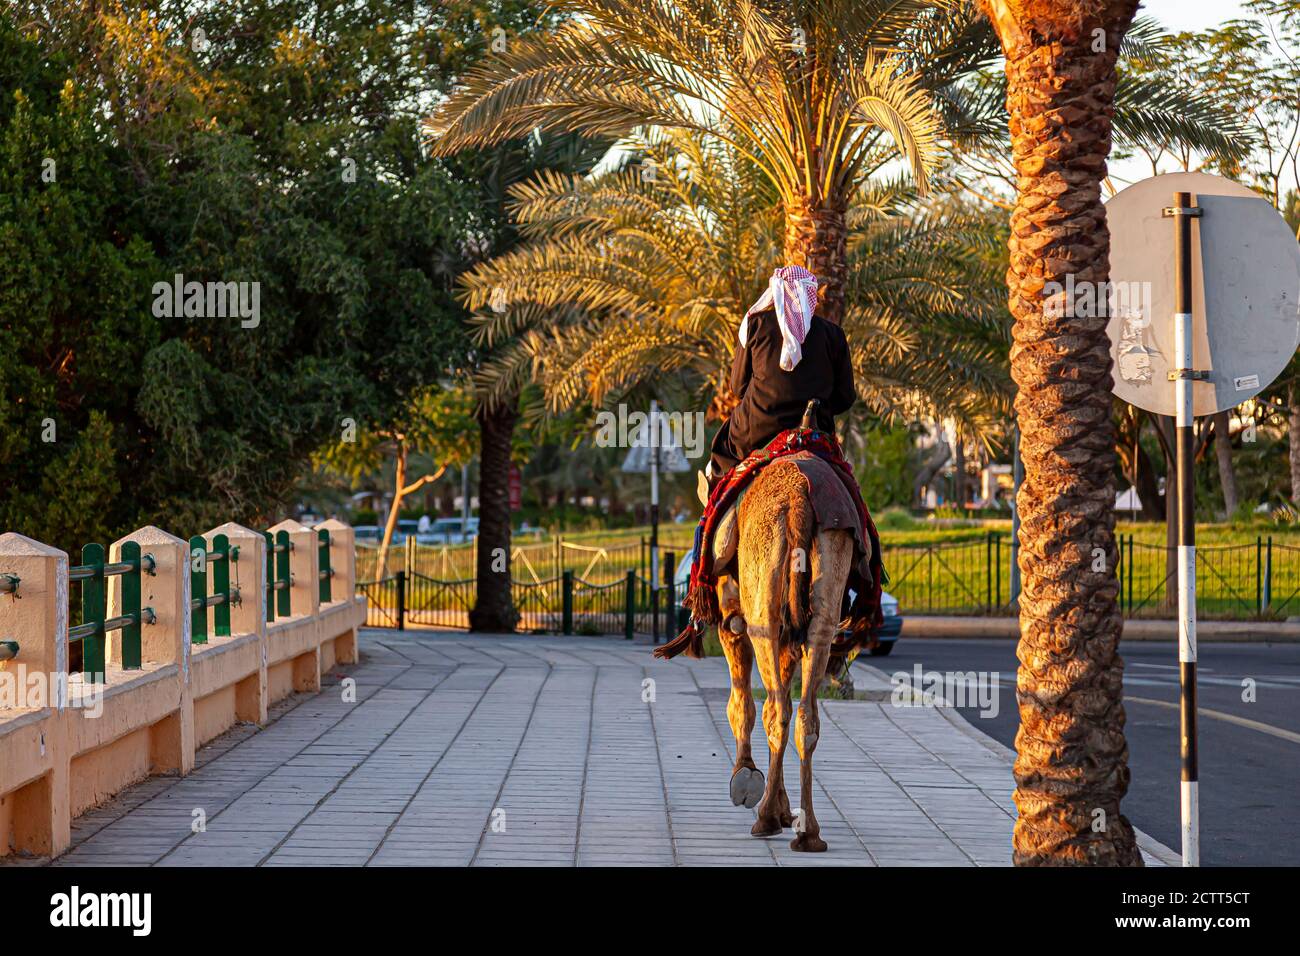 Un jordanien portant des vêtements arabes traditionnels est à cheval sur un dromadaire dromadaire lors d'une promenade latérale à Aqaba, en Jordanie, au coucher du soleil. Il y a des palmiers dattiers plantés Banque D'Images